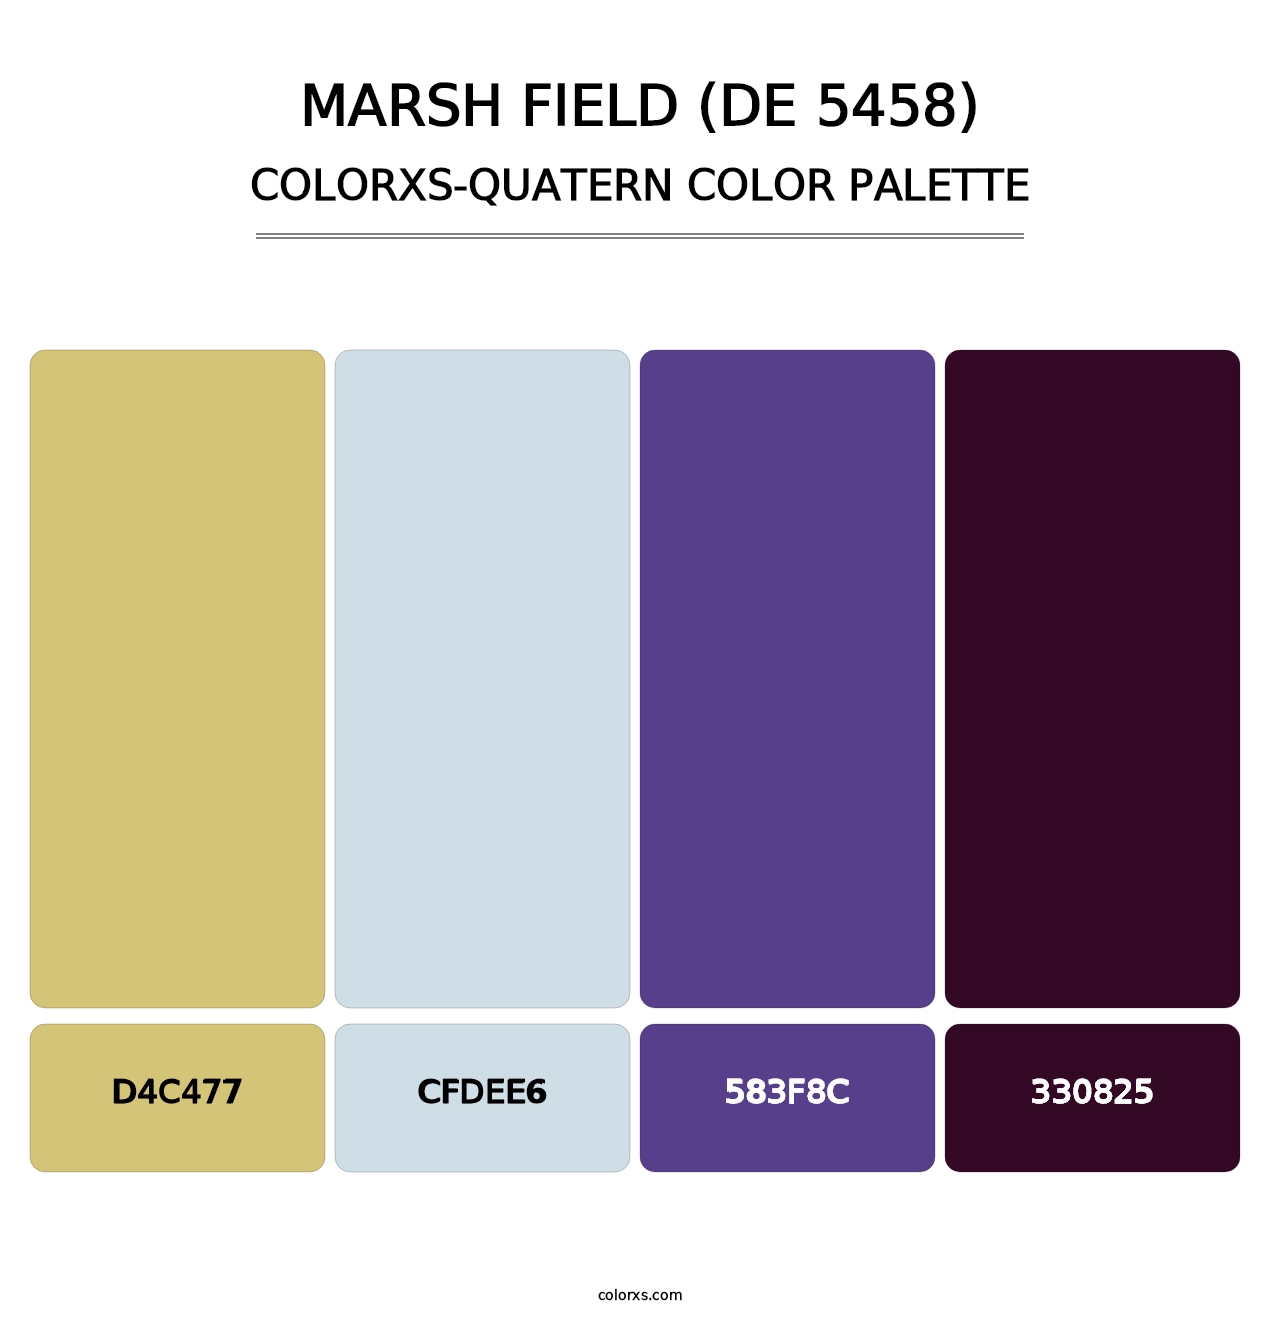 Marsh Field (DE 5458) - Colorxs Quatern Palette